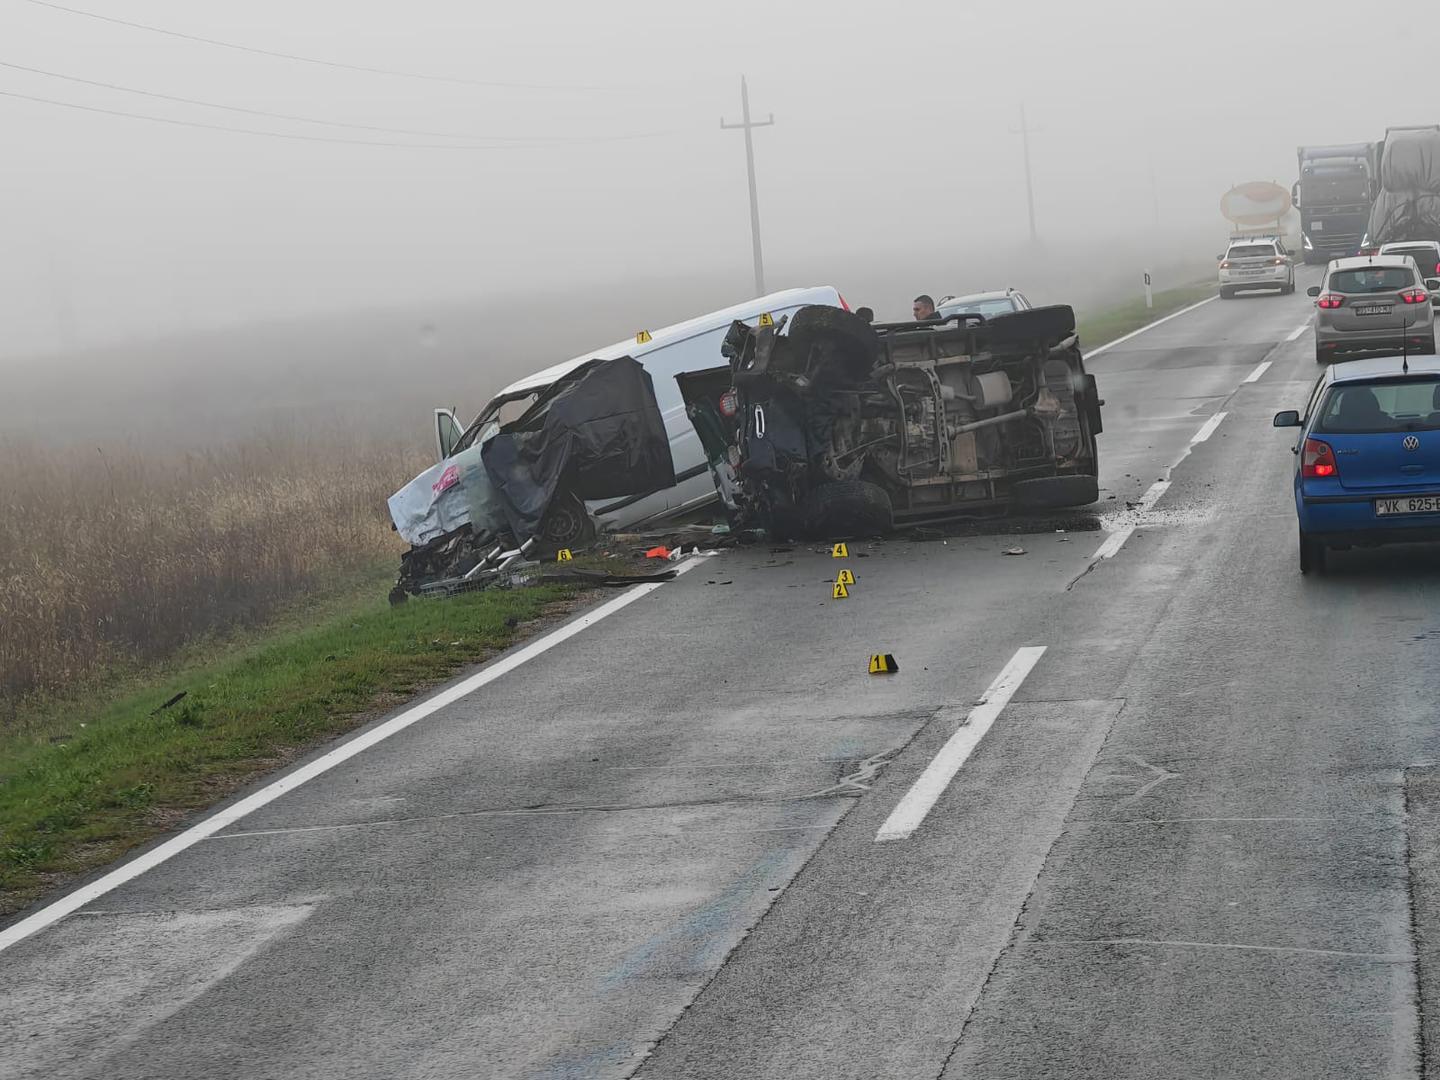 11.11.2023., Osijek - Ministar obrane Mario Banozic sudjelovao je jutros u prometnoj nesreci u kojoj je poginula jedna osoba. Ministar je upravljao osobnim vozilom koje se sudarilo s kombijem. Vozac kombija je poginuo. Photo: Vinkulja/PIXSELL